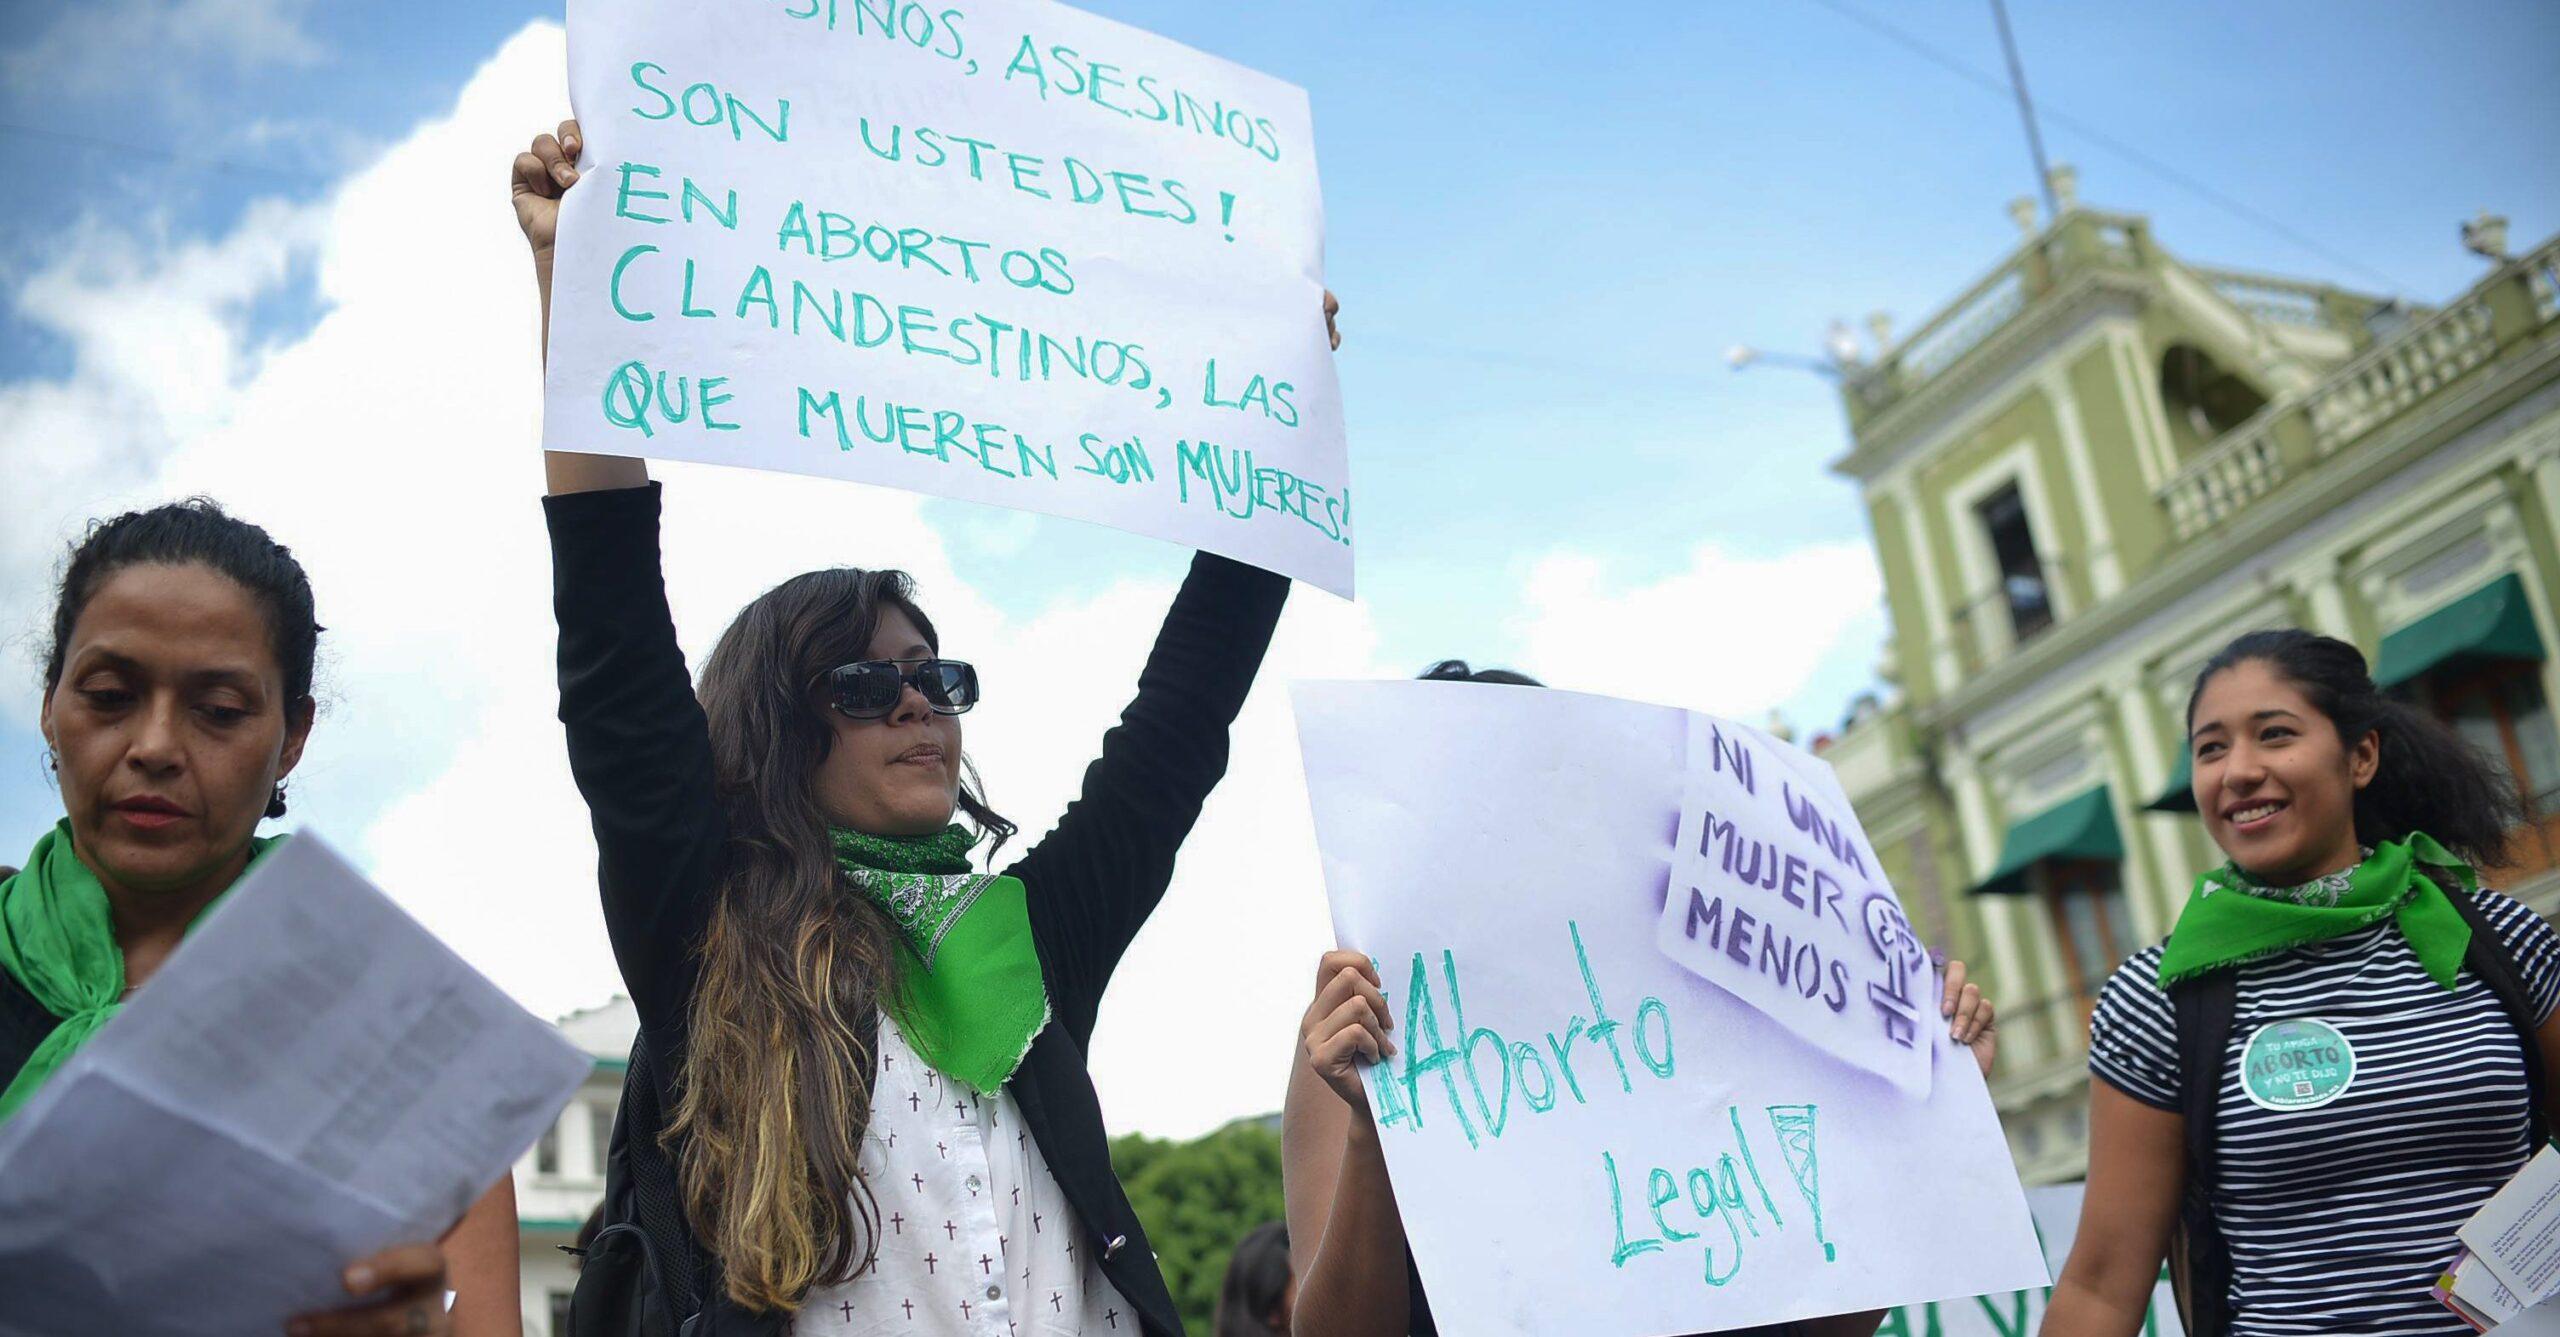 Tras protestas de estudiantes ITESO revira y permite diálogo sobre el aborto en sus instalaciones